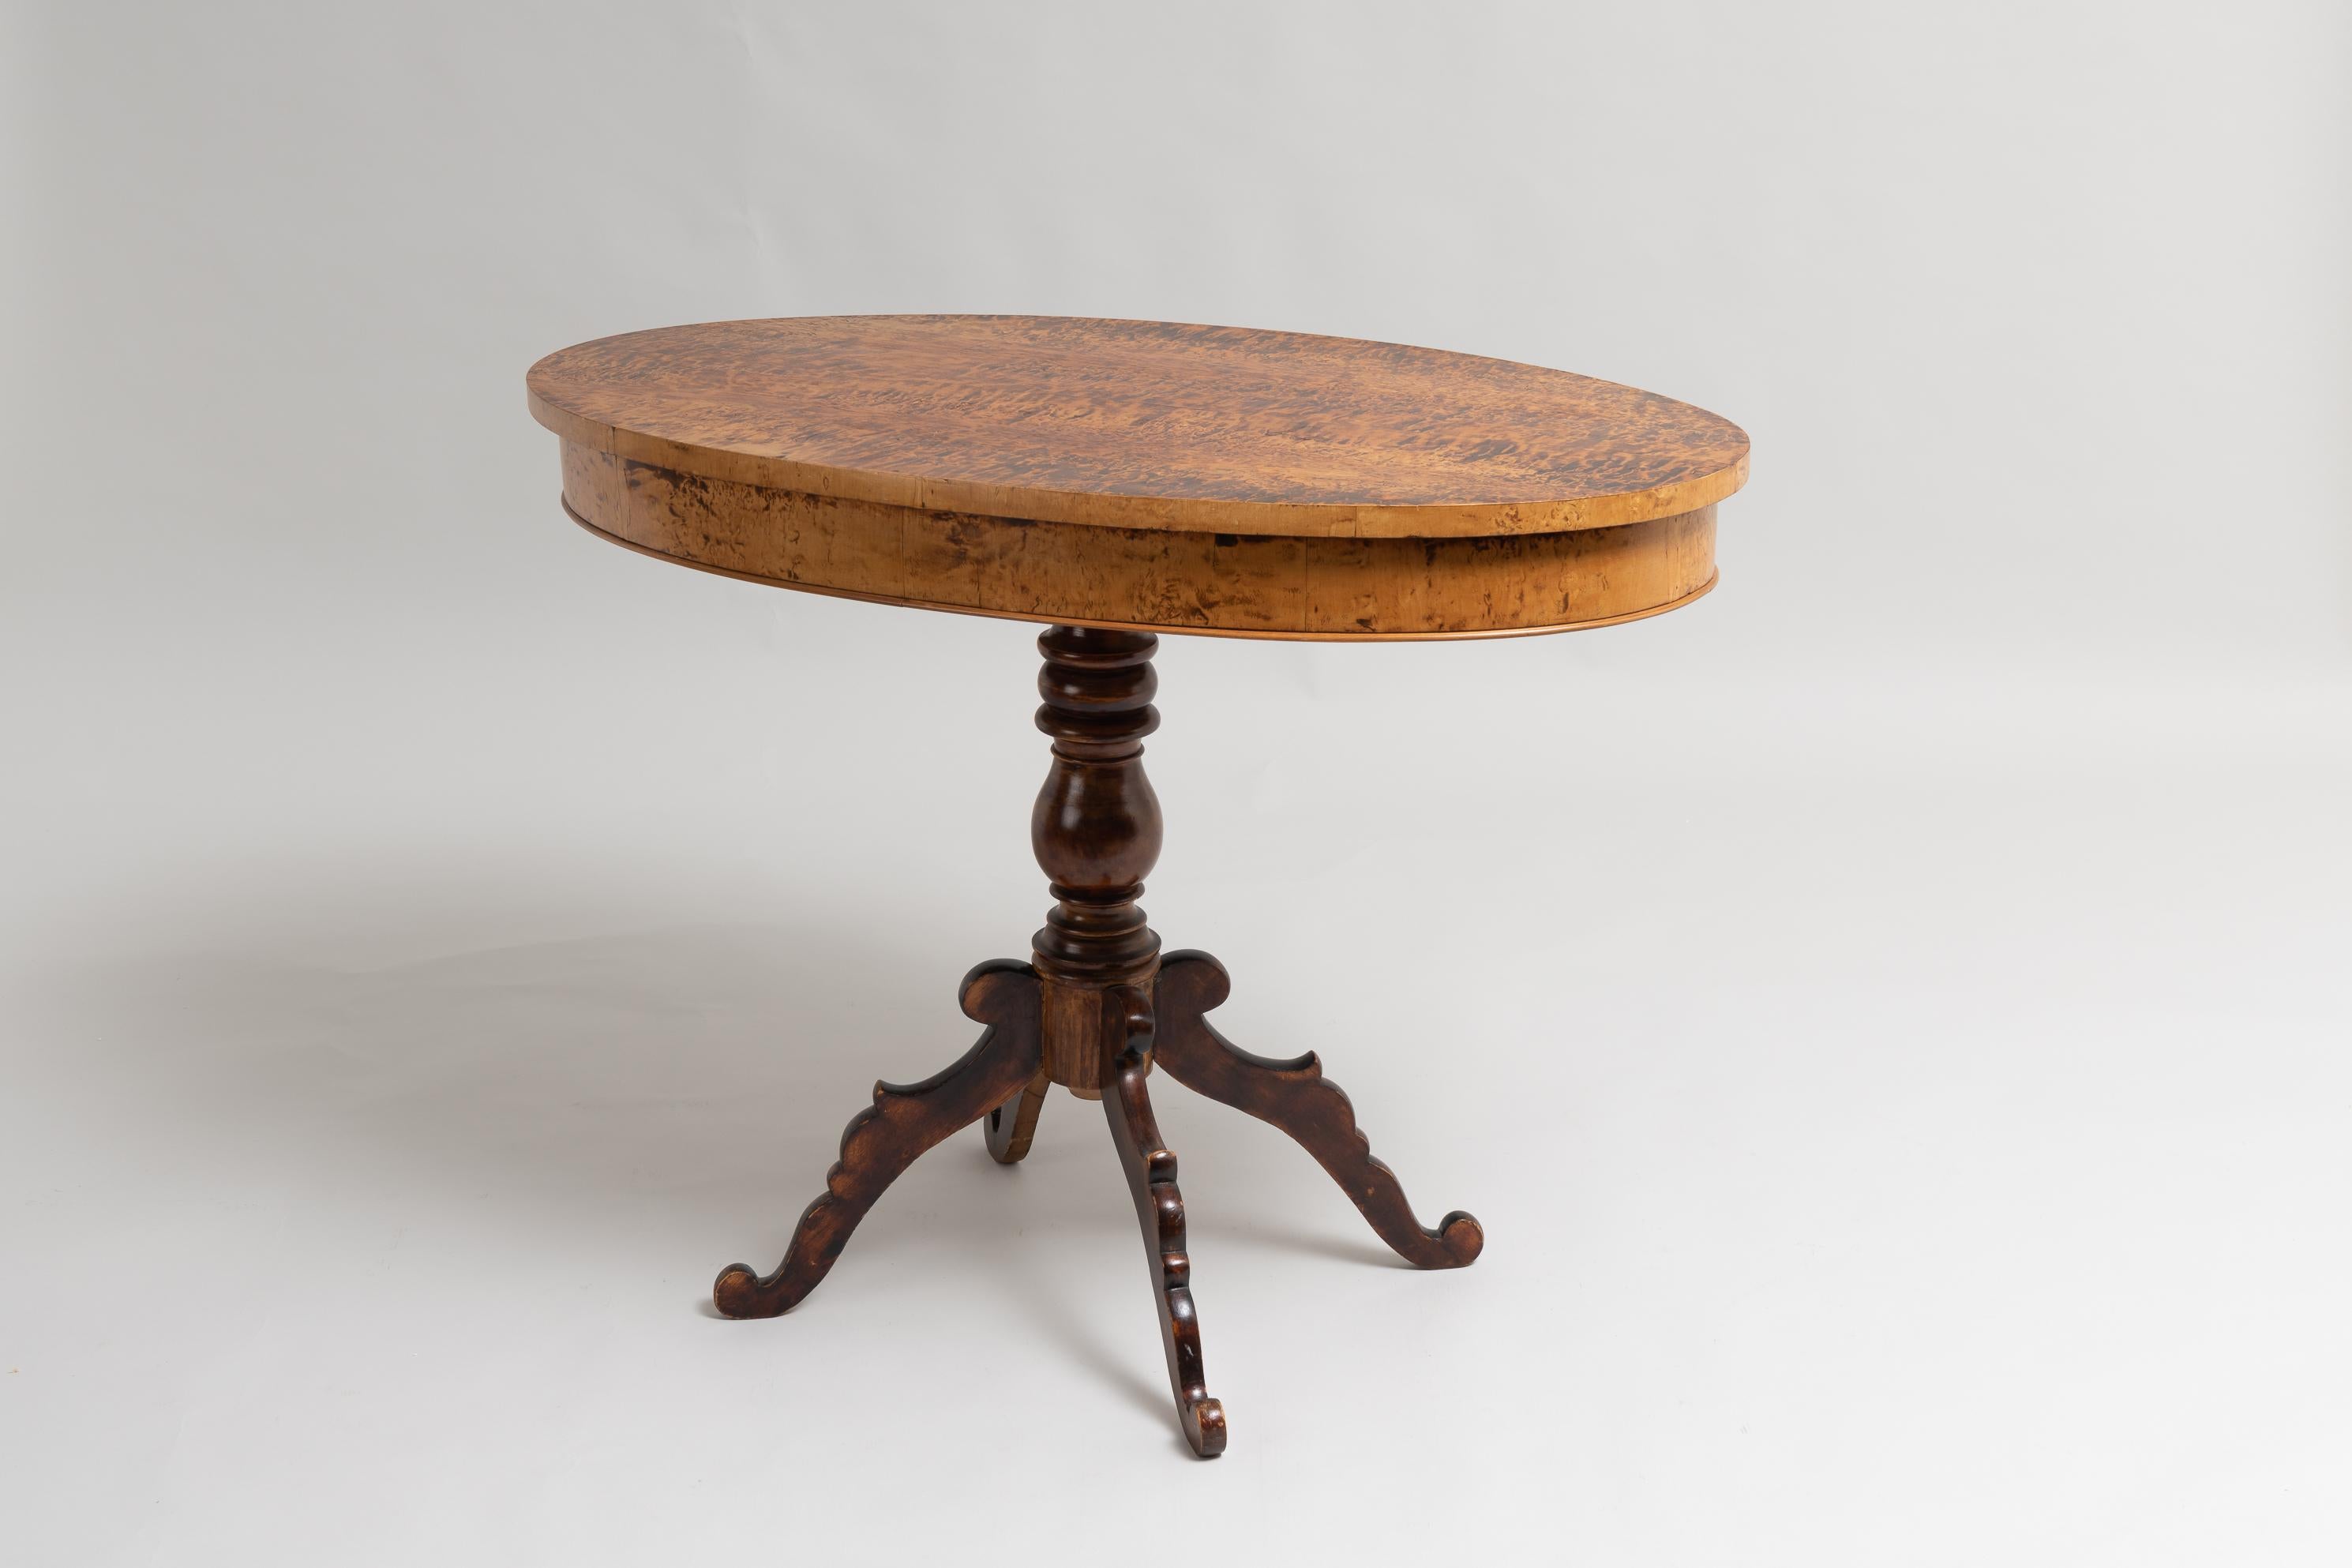 Rokoko-Revival-Mitteltisch aus Schweden aus den Jahren 1860 bis 1870. Der Tisch hat ein einsäuliges Untergestell mit 4 Beinen und eine ovale Tischplatte. Die Tischplatte ist mit Birkenwurzel furniert und die Oberfläche wurde so behandelt, dass die